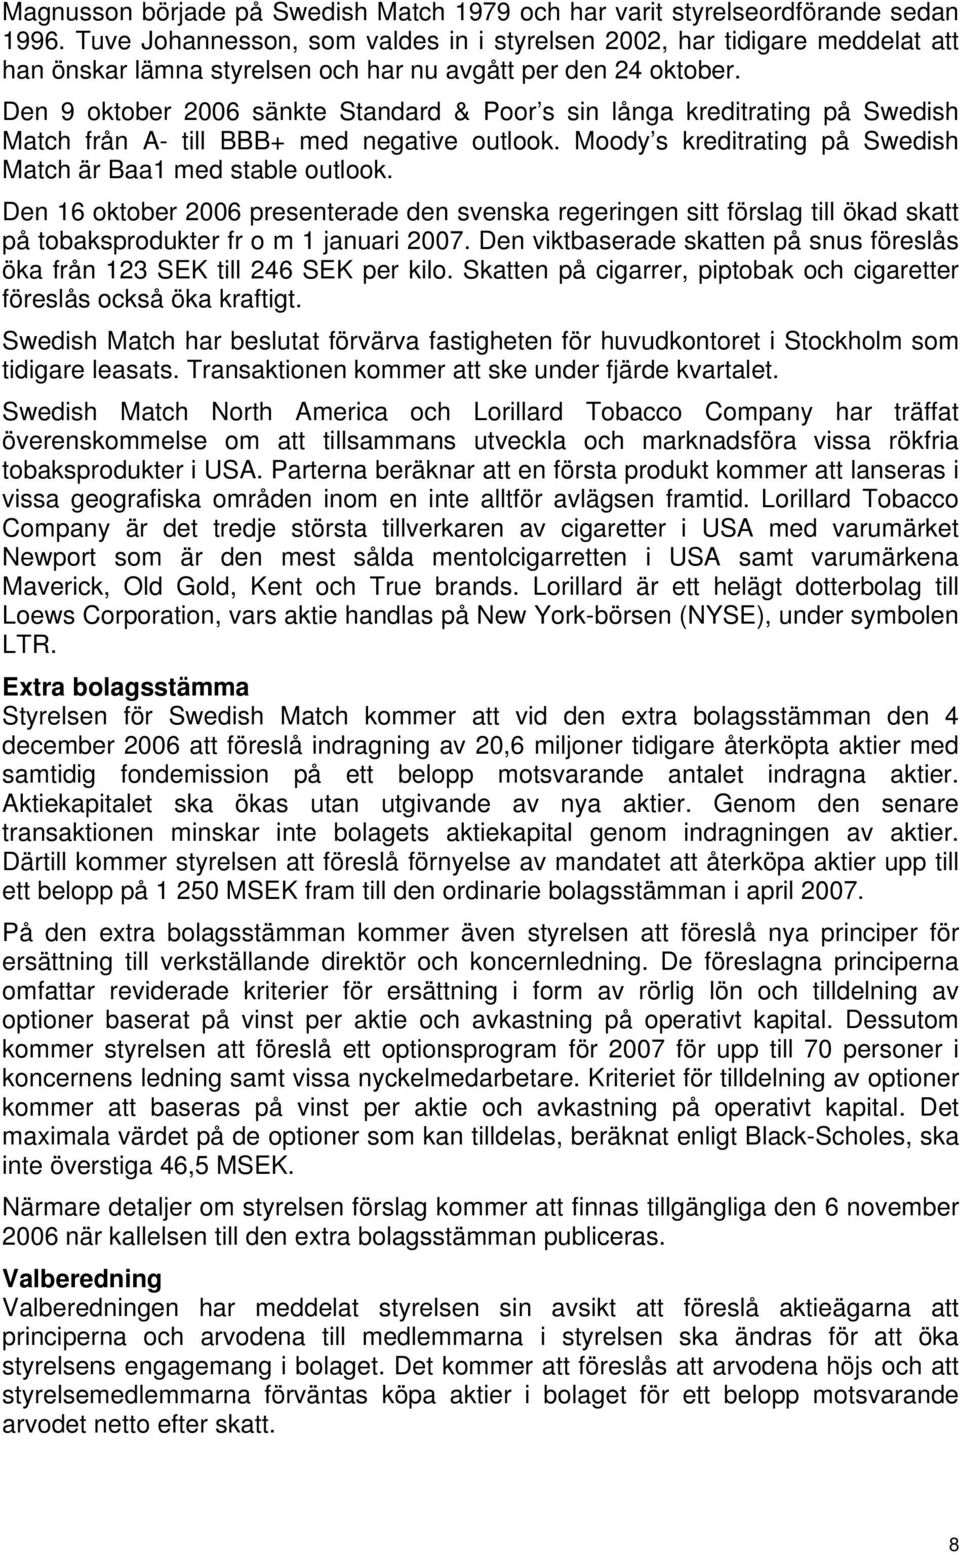 Den 9 oktober 2006 sänkte Standard & Poor s sin långa kreditrating på Swedish Match från A- till BBB+ med negative outlook. Moody s kreditrating på Swedish Match är Baa1 med stable outlook.